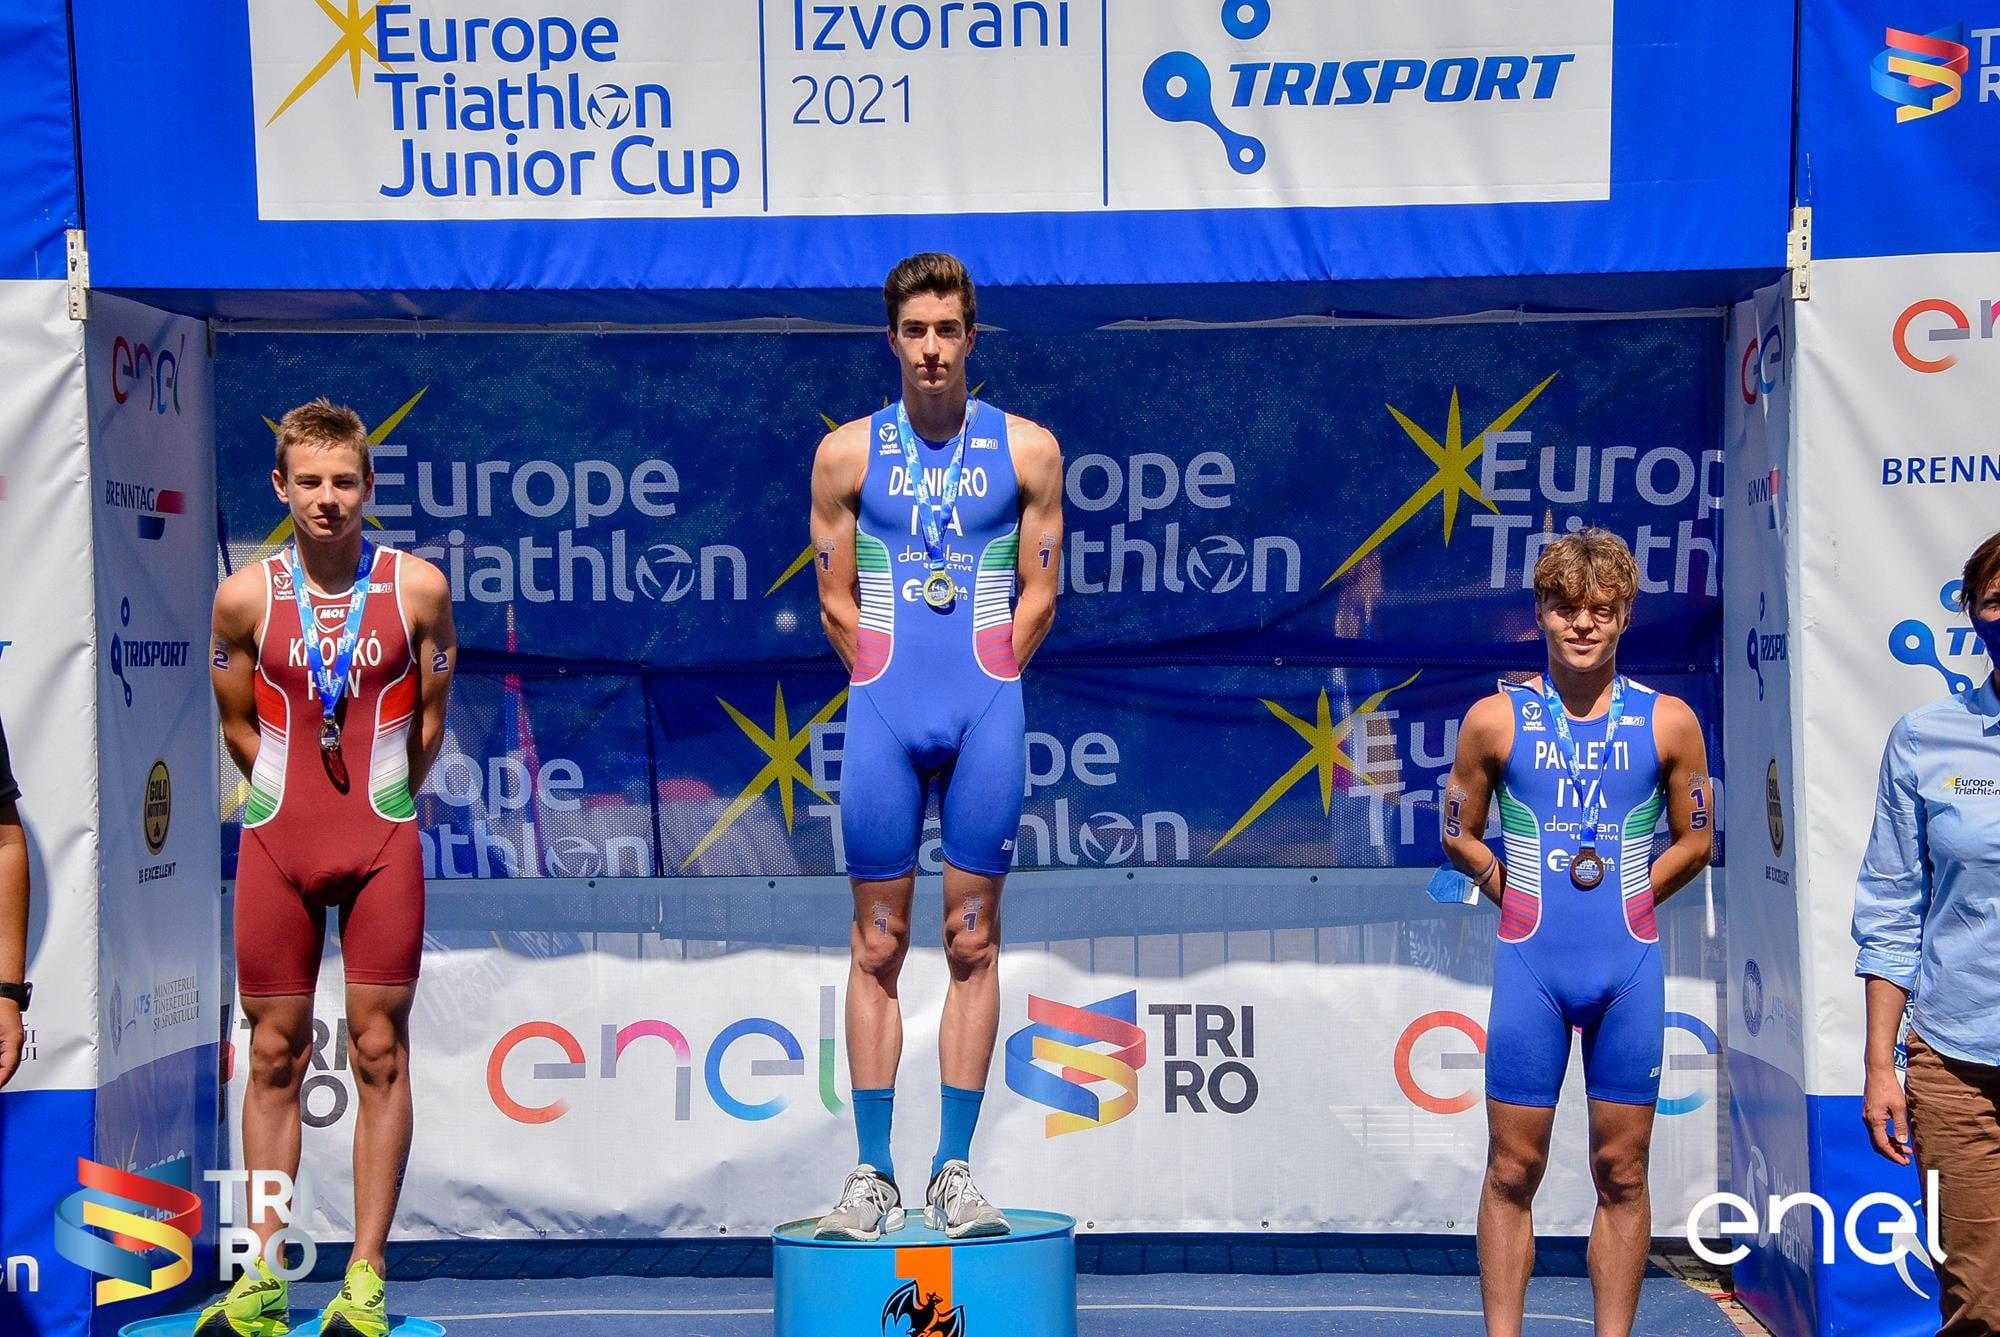 De Nigro a segno alla Europe Triathlon Junior Cup di Izvorani. Paoletti e Crociani sul podio